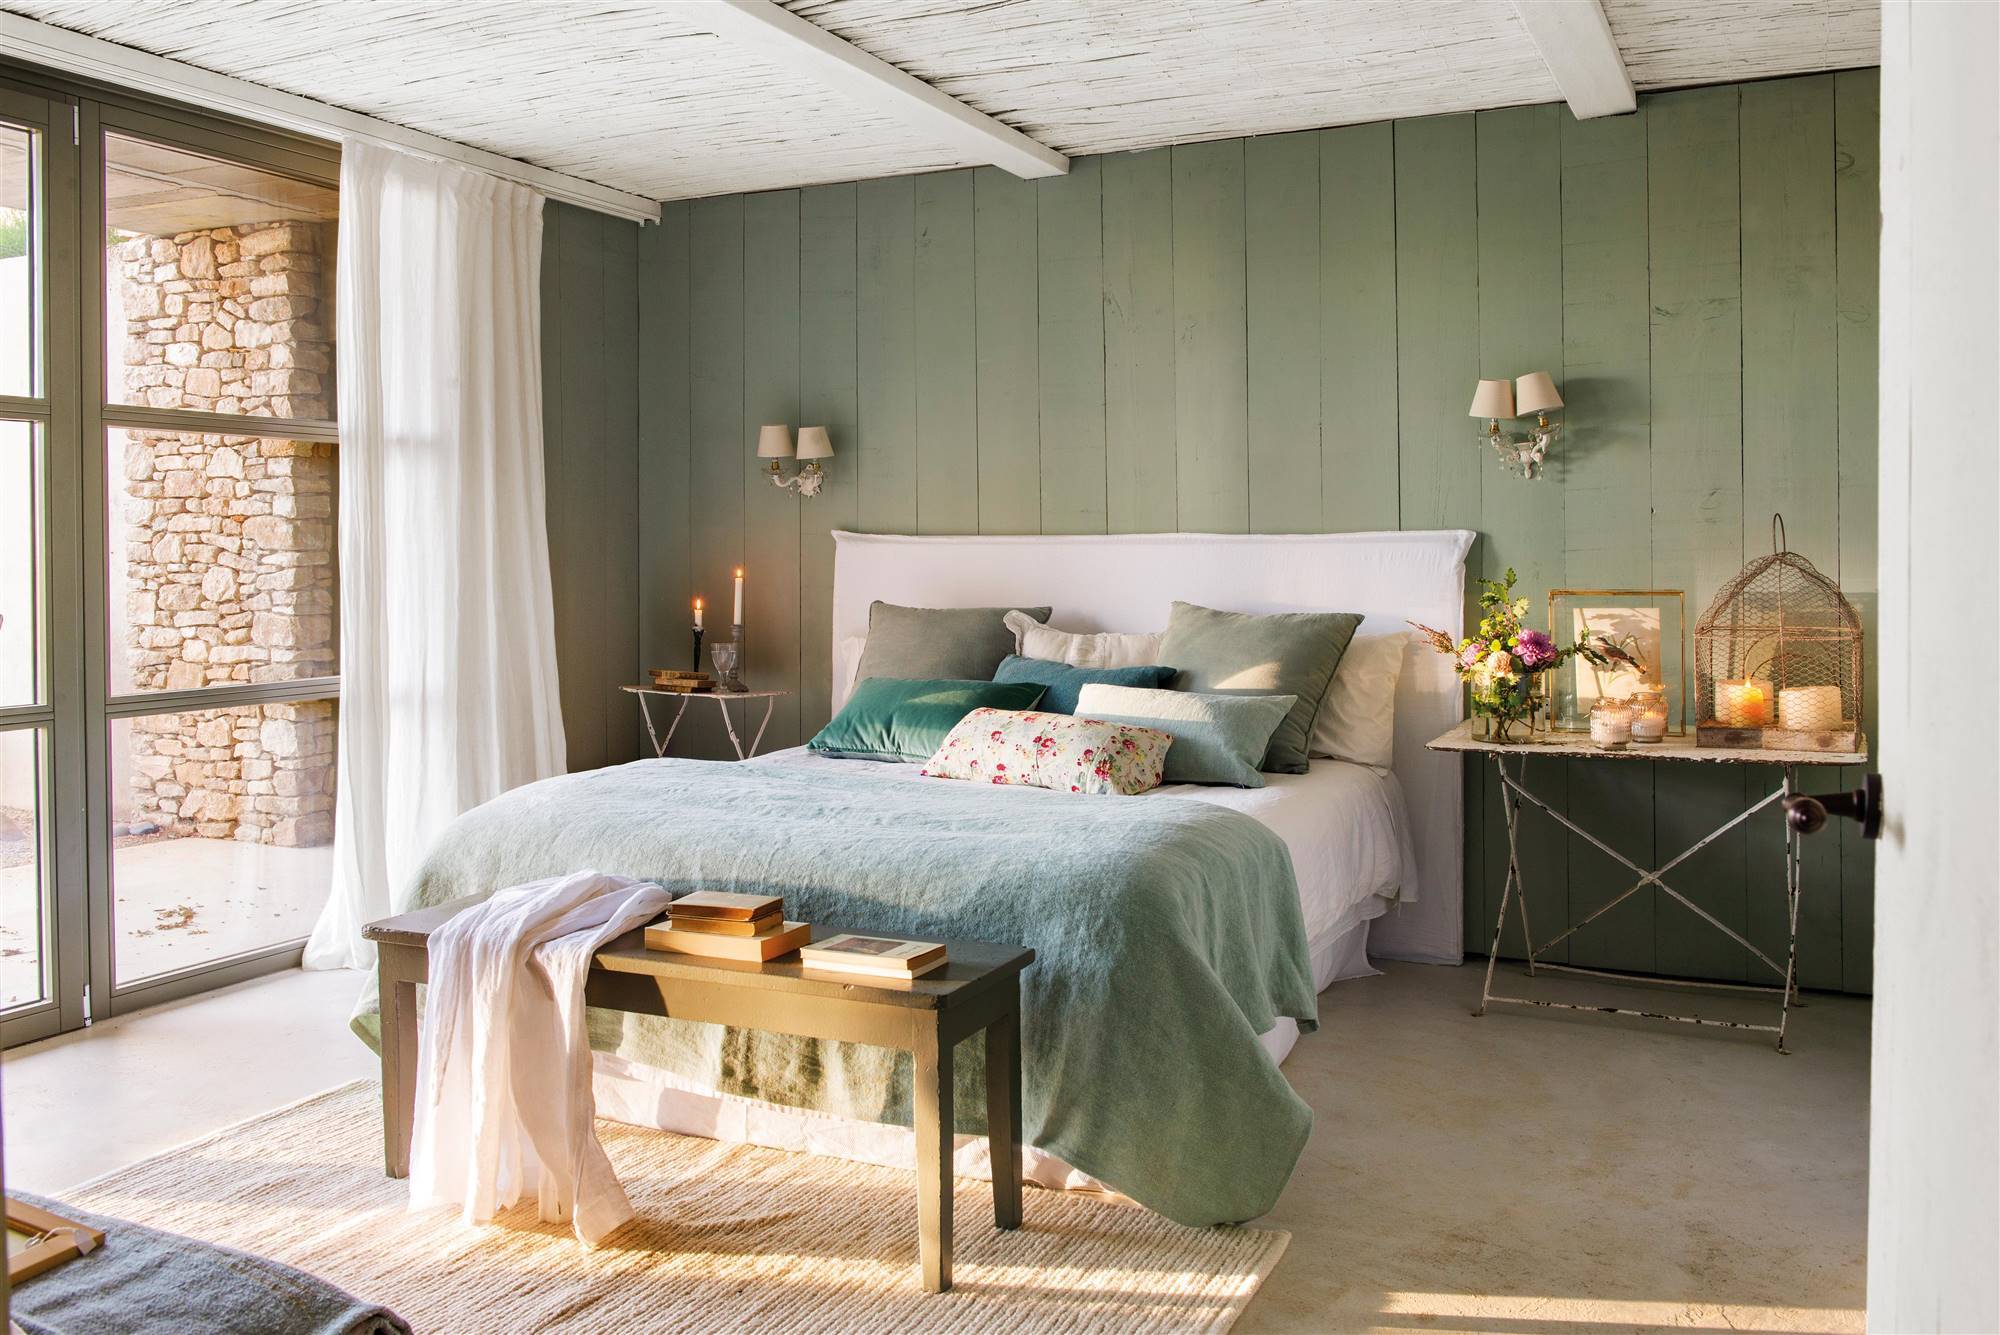 Dormitorio de estilo vintage con pared de madera en verde.